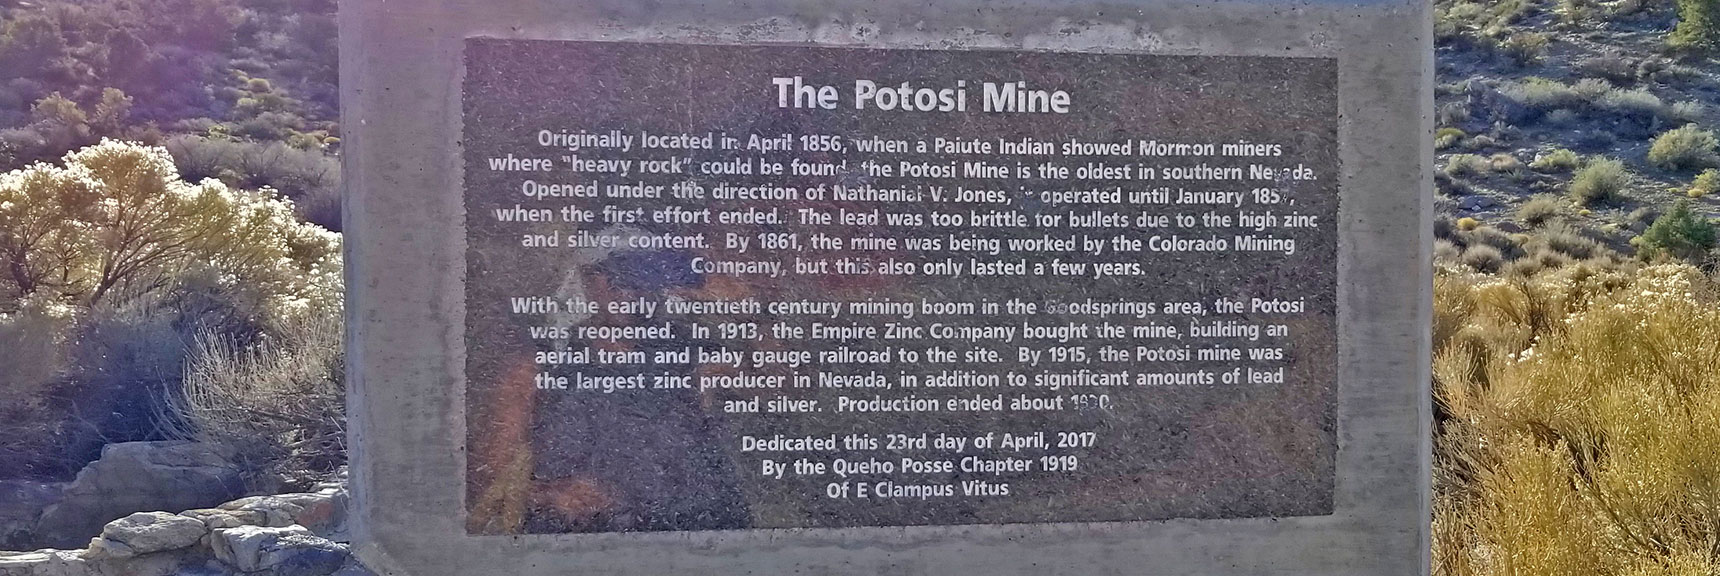 Potosi Mine Historic Sign at Potosi Spring | Potosi Mt. Summit via Western Cliffs Ridgeline, Spring Mountains, Nevada